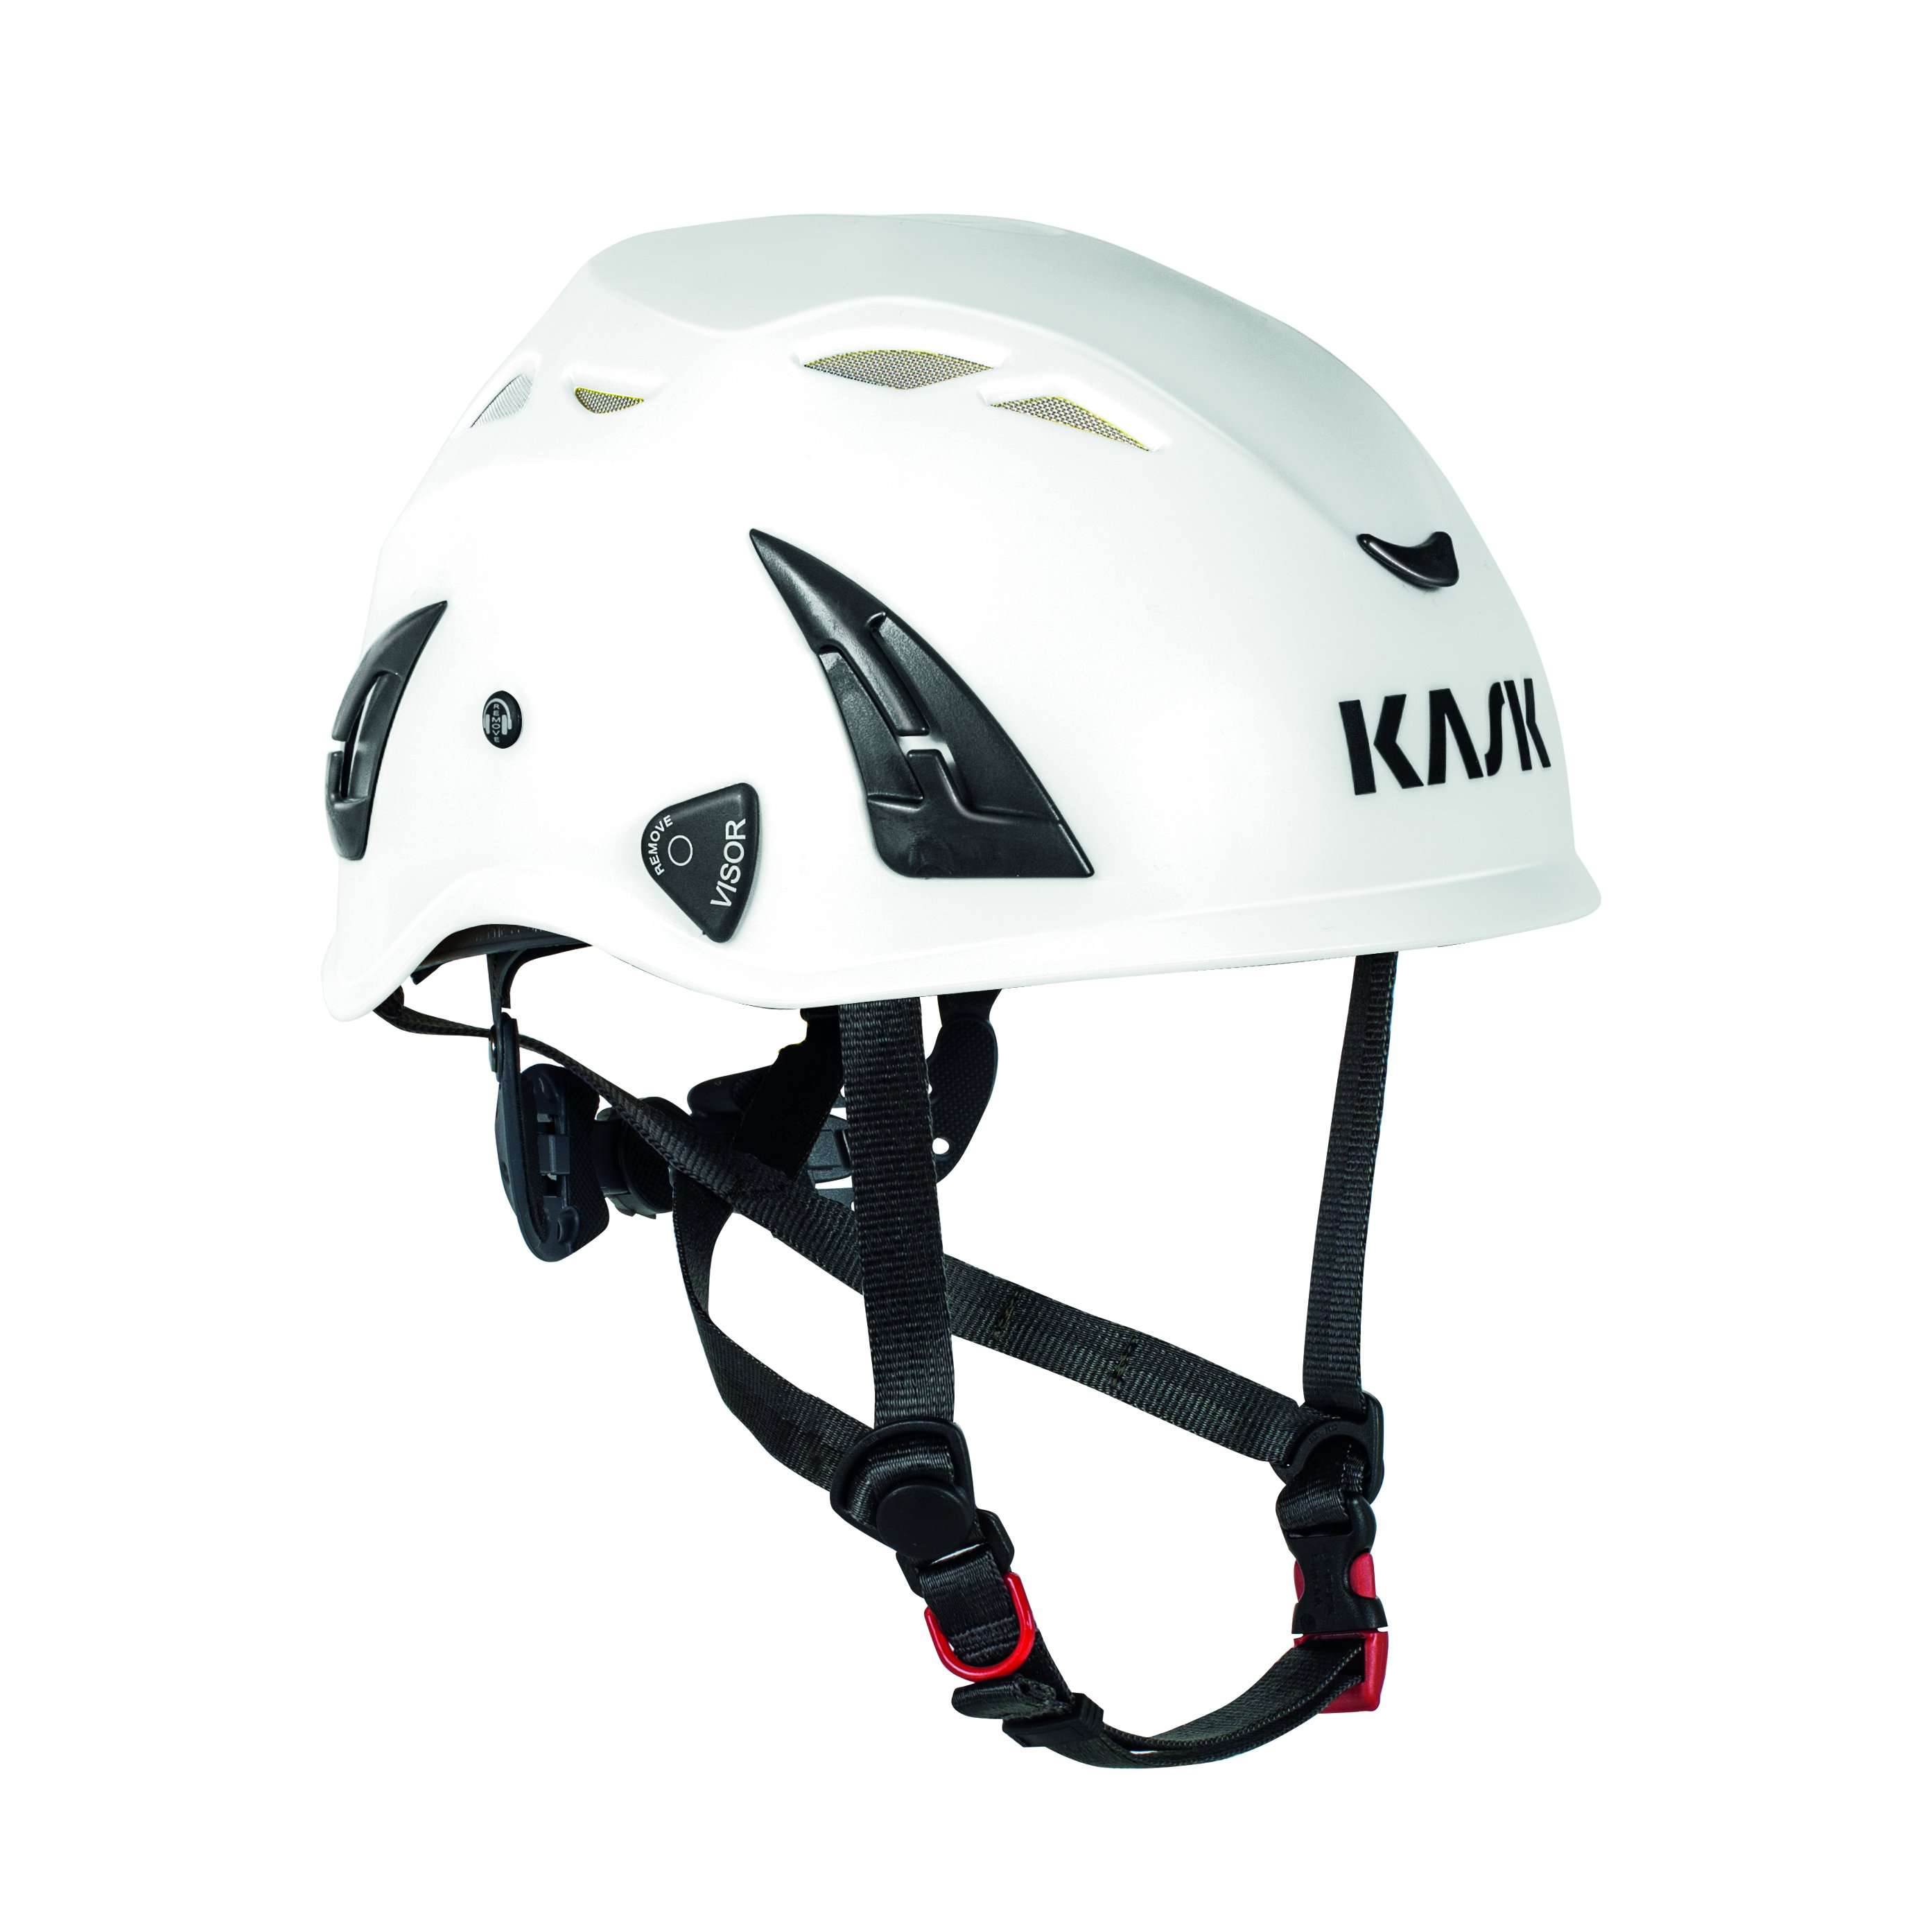 AHE00005 KASK Super Plasma PL Helmet - EN12492